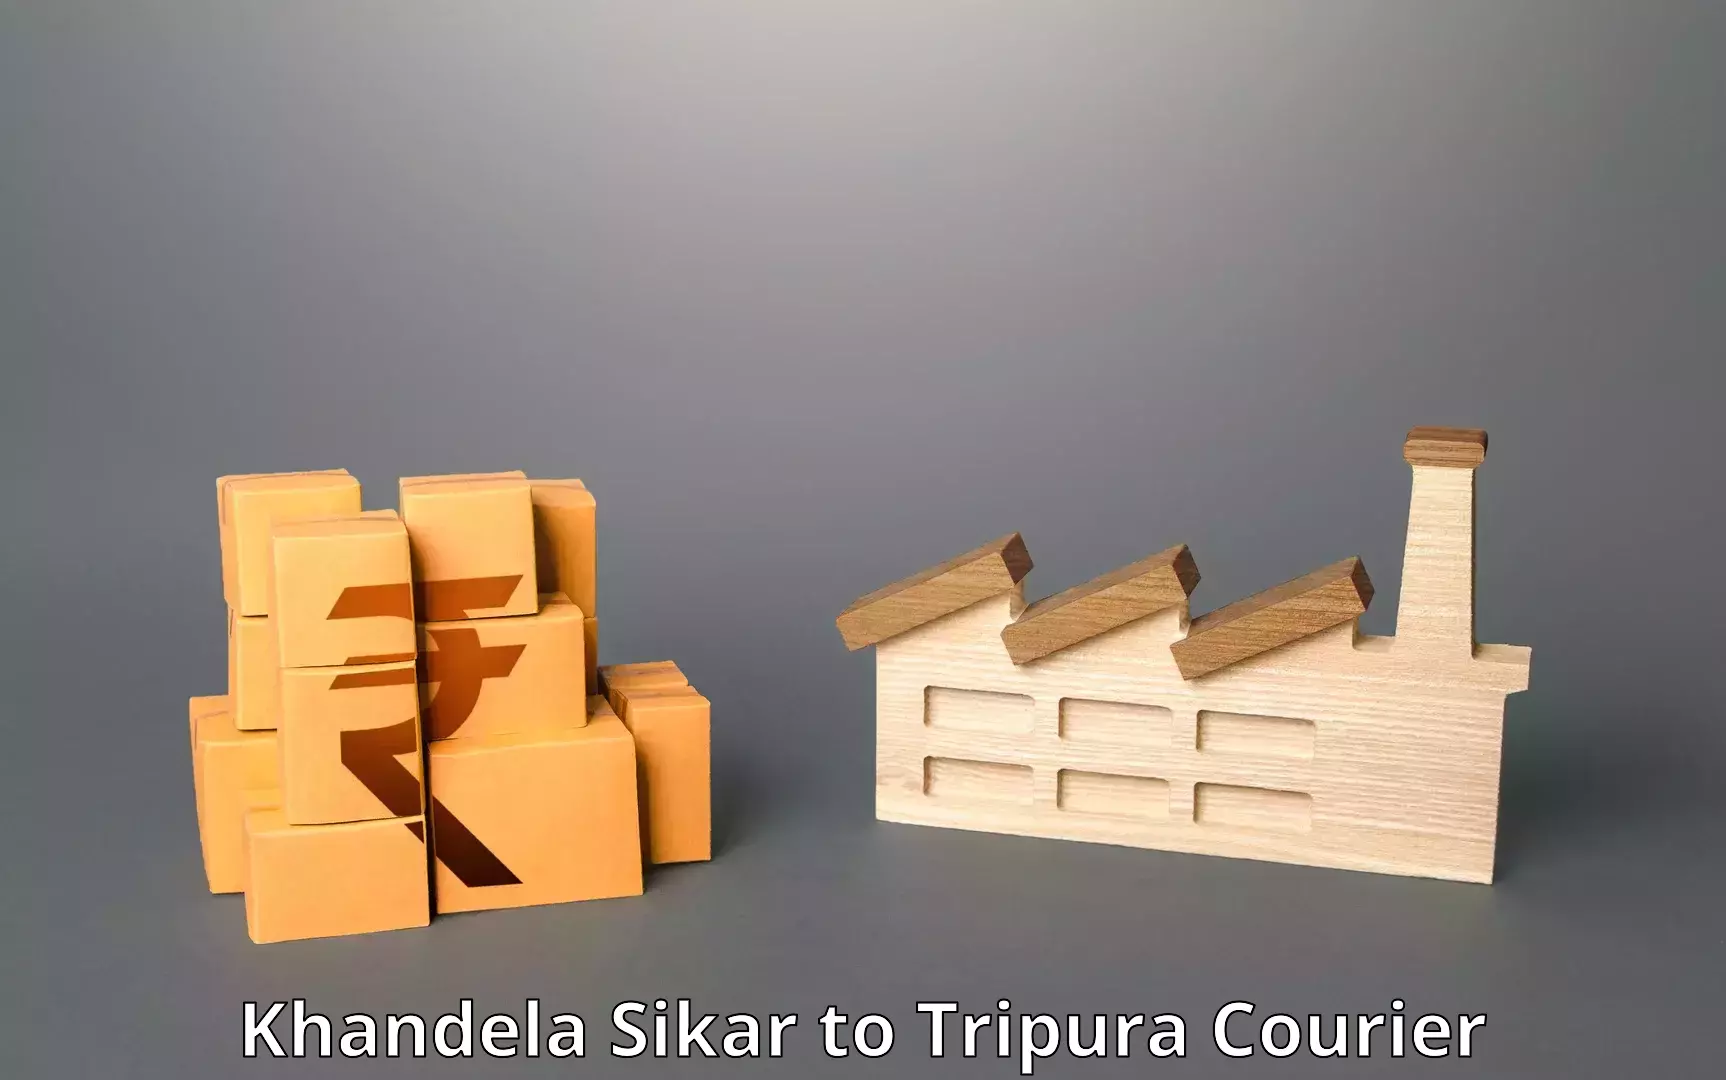 Innovative courier solutions Khandela Sikar to Tripura